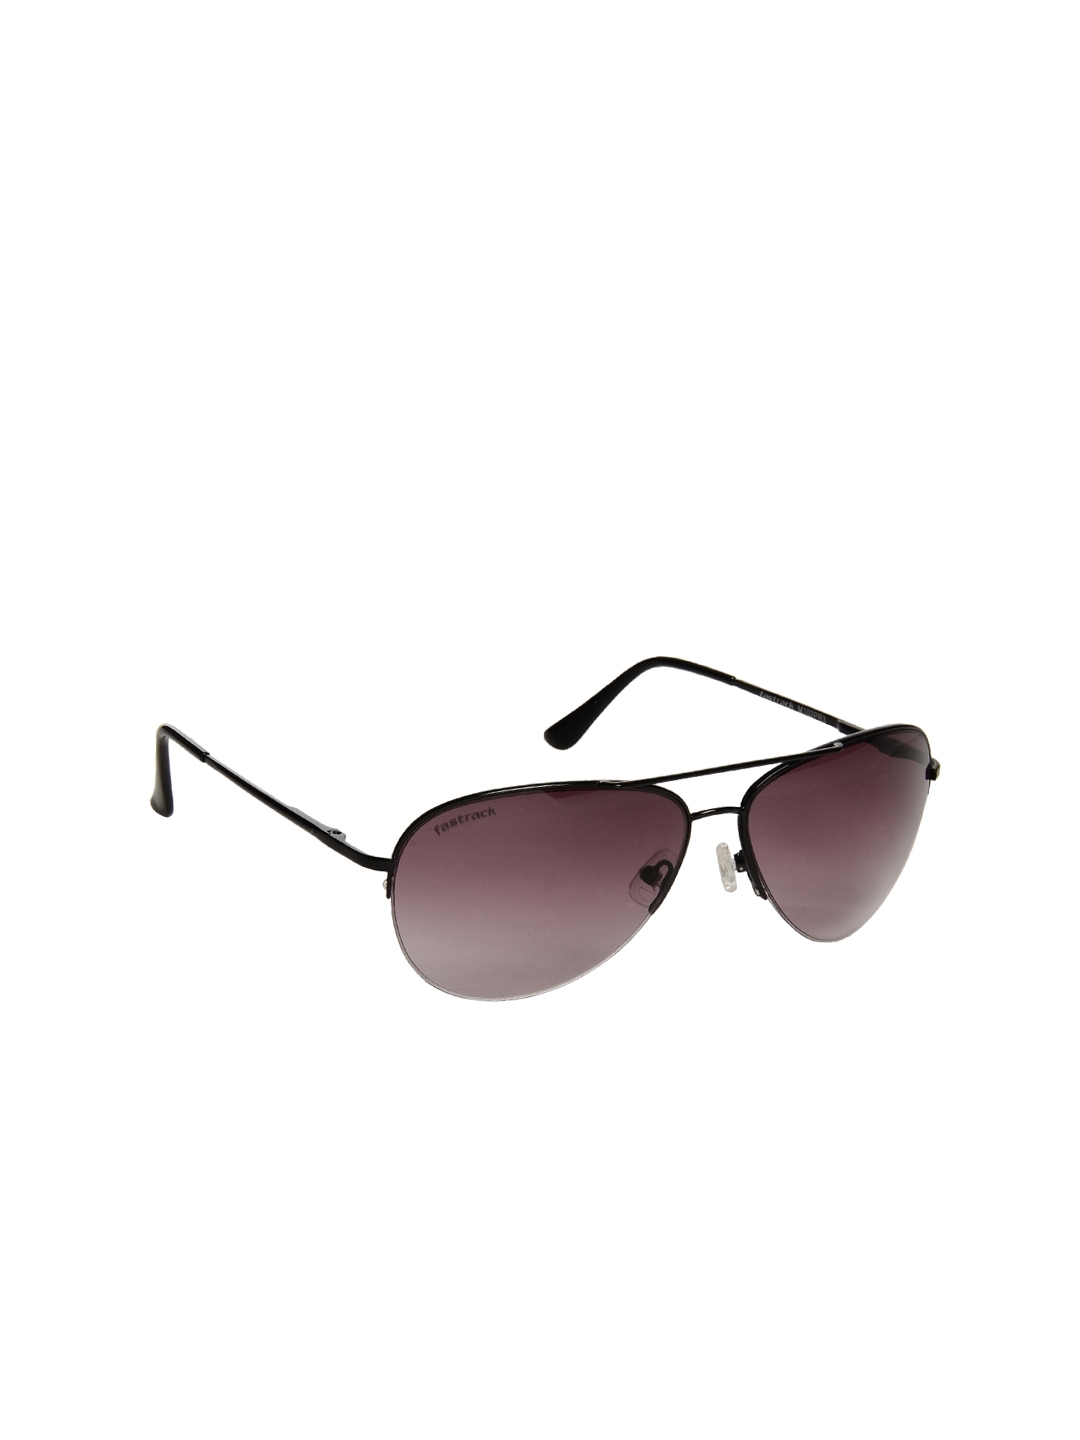 Buy Fastrack Men Beach Sunglasses - Sunglasses for Men 8620 | Myntra